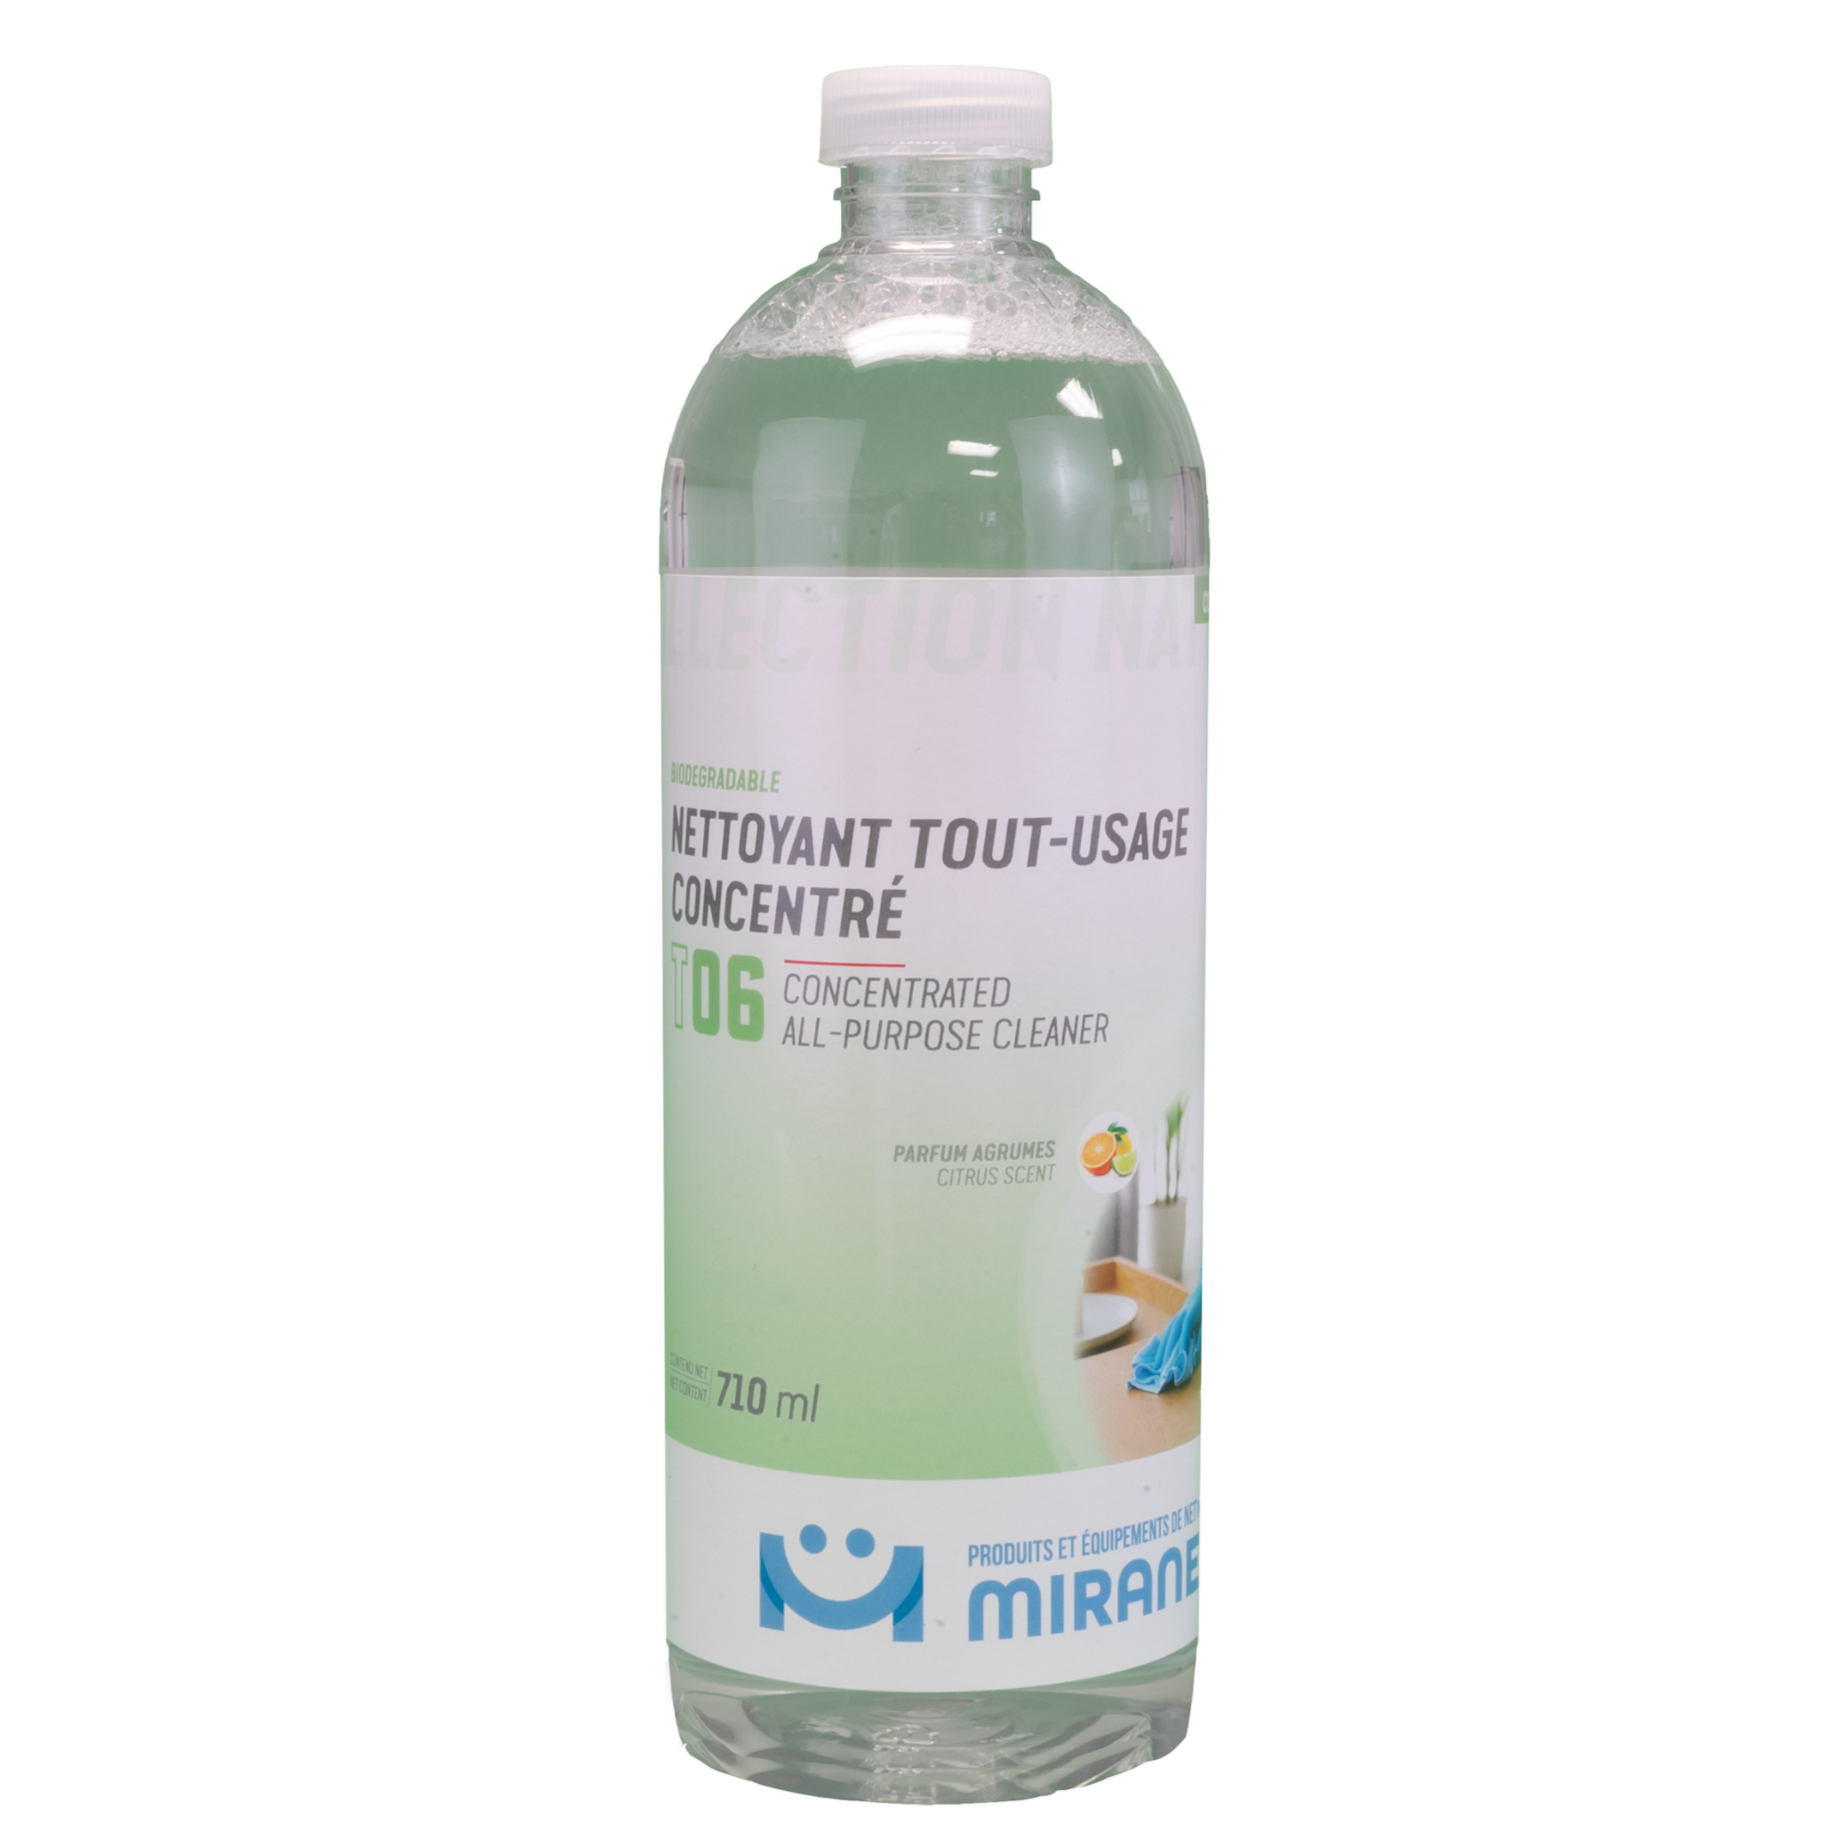 nettoyant tout-usage concentré t06 biodégradable parfum agrumes 710ml miranet